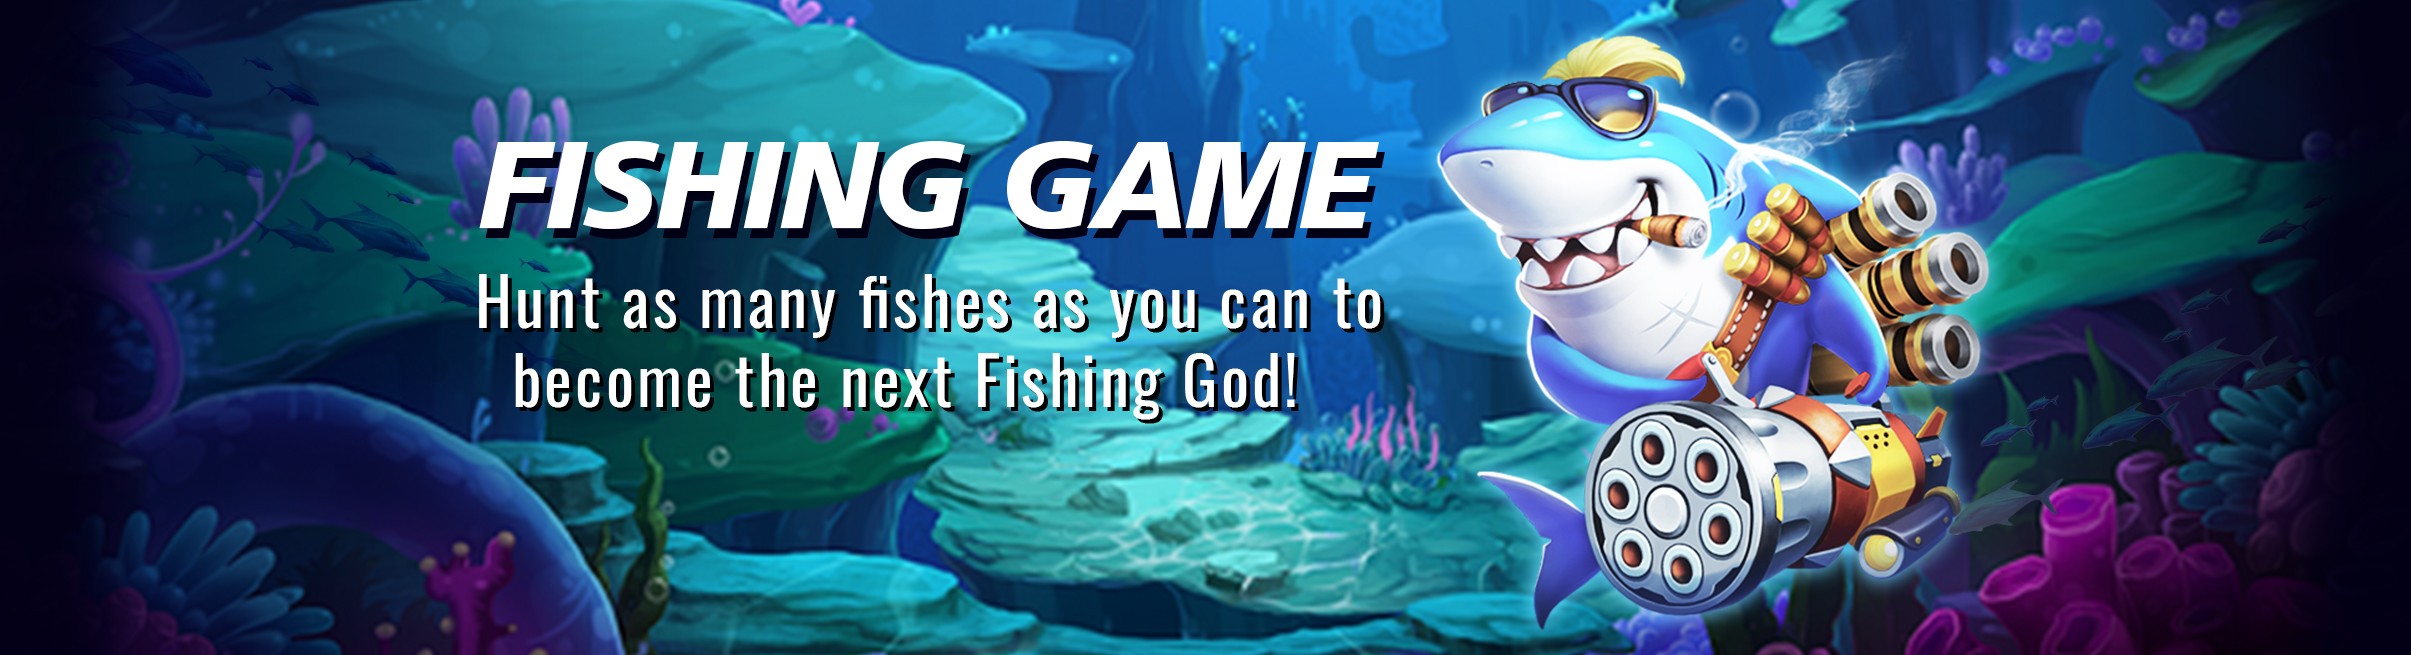 Play BG fish hunting